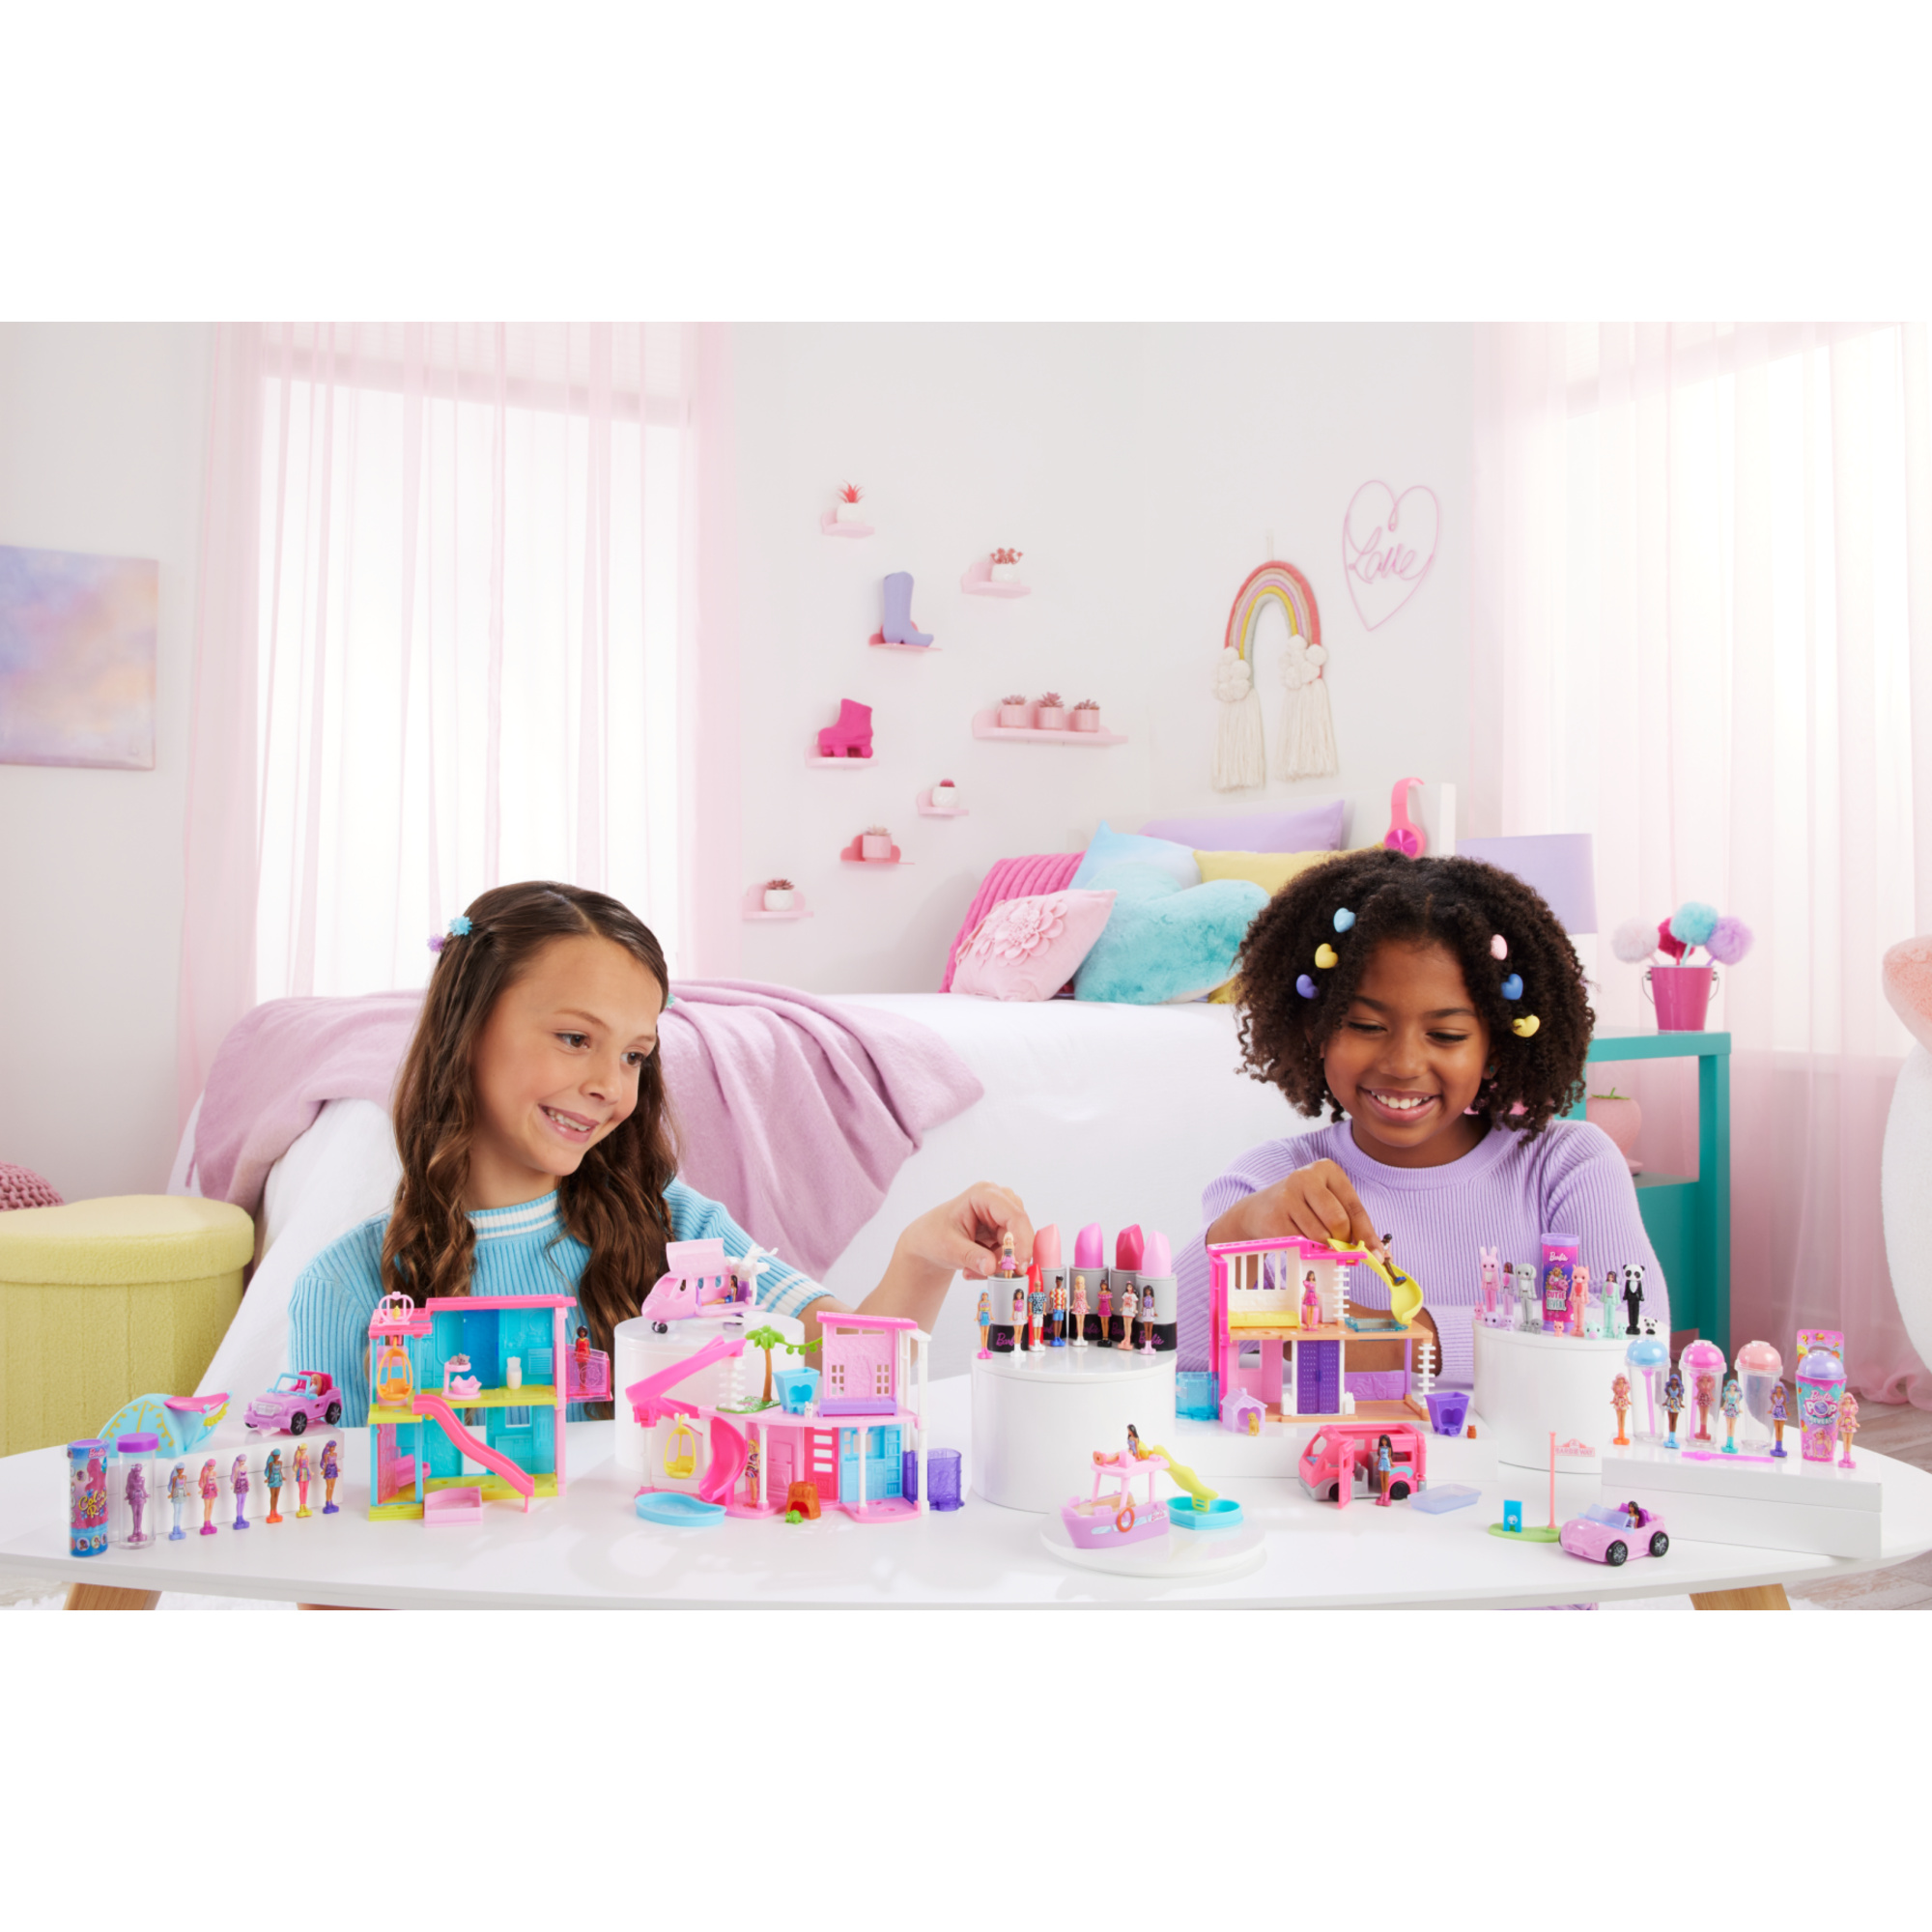 Mini barbieland - color reveal - mini bambola con sorpresa che cambia colore con l'acqua - Barbie